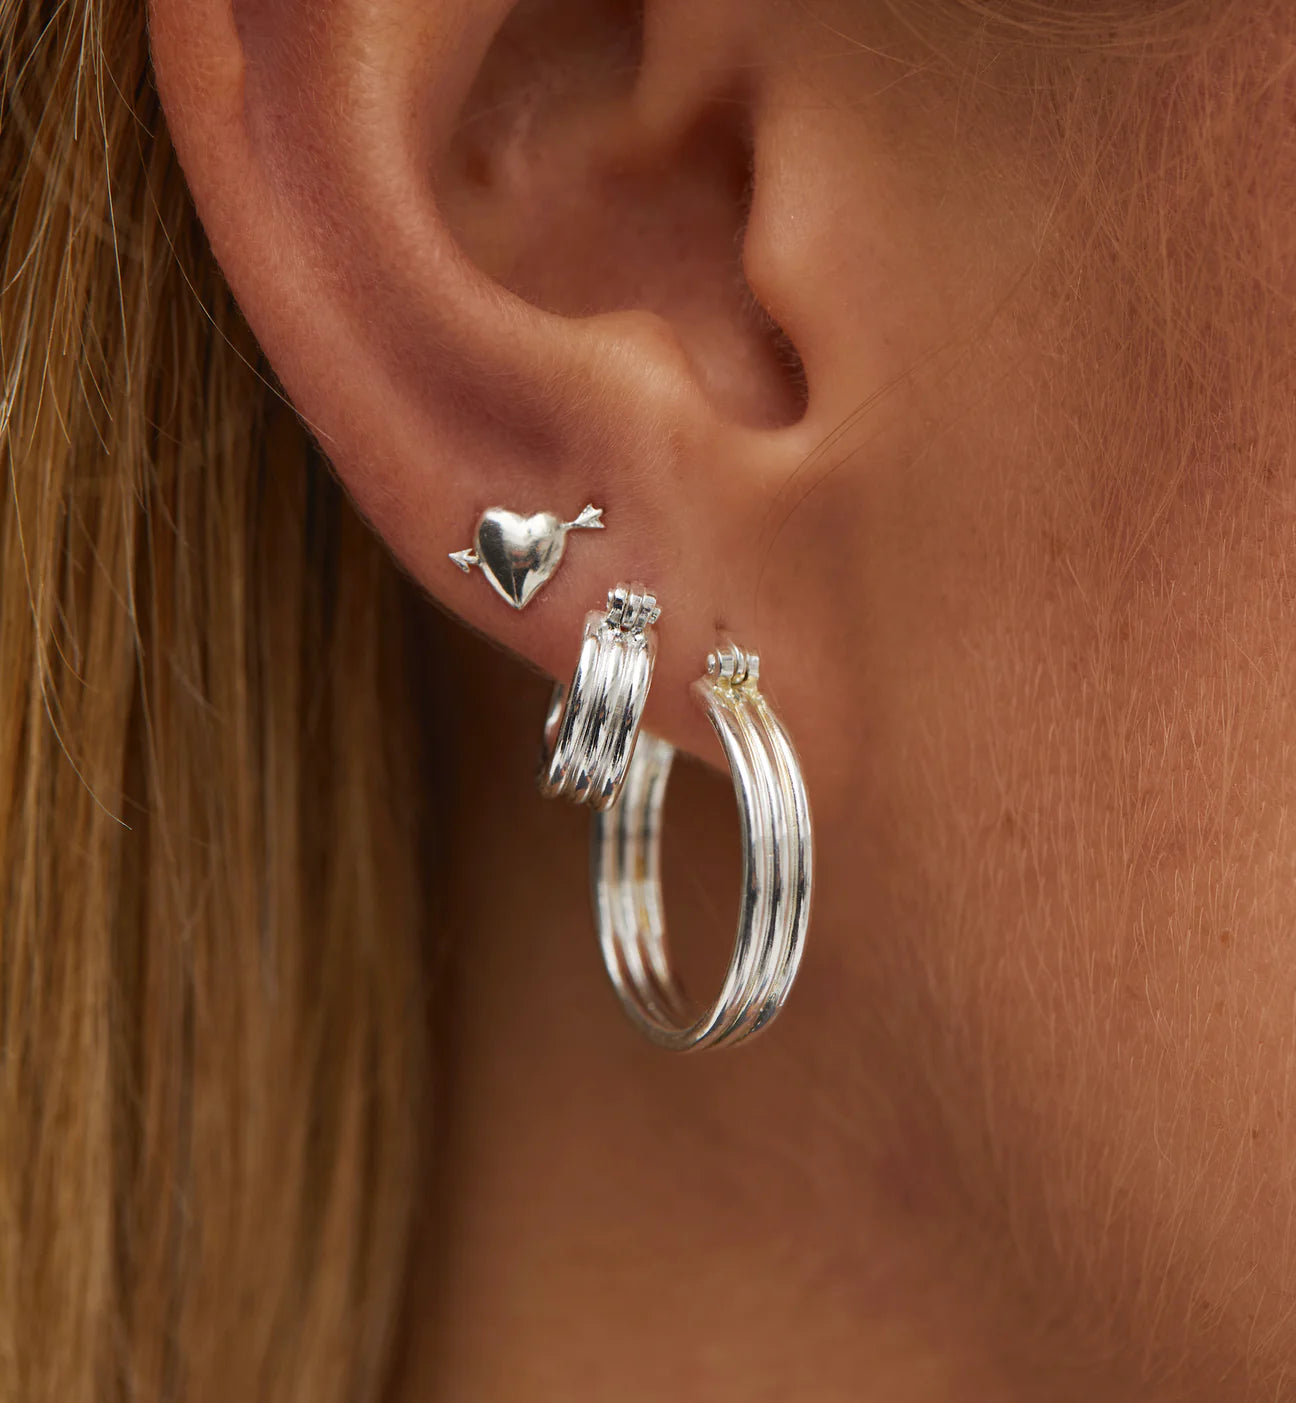 model wears small ring earrings in silver